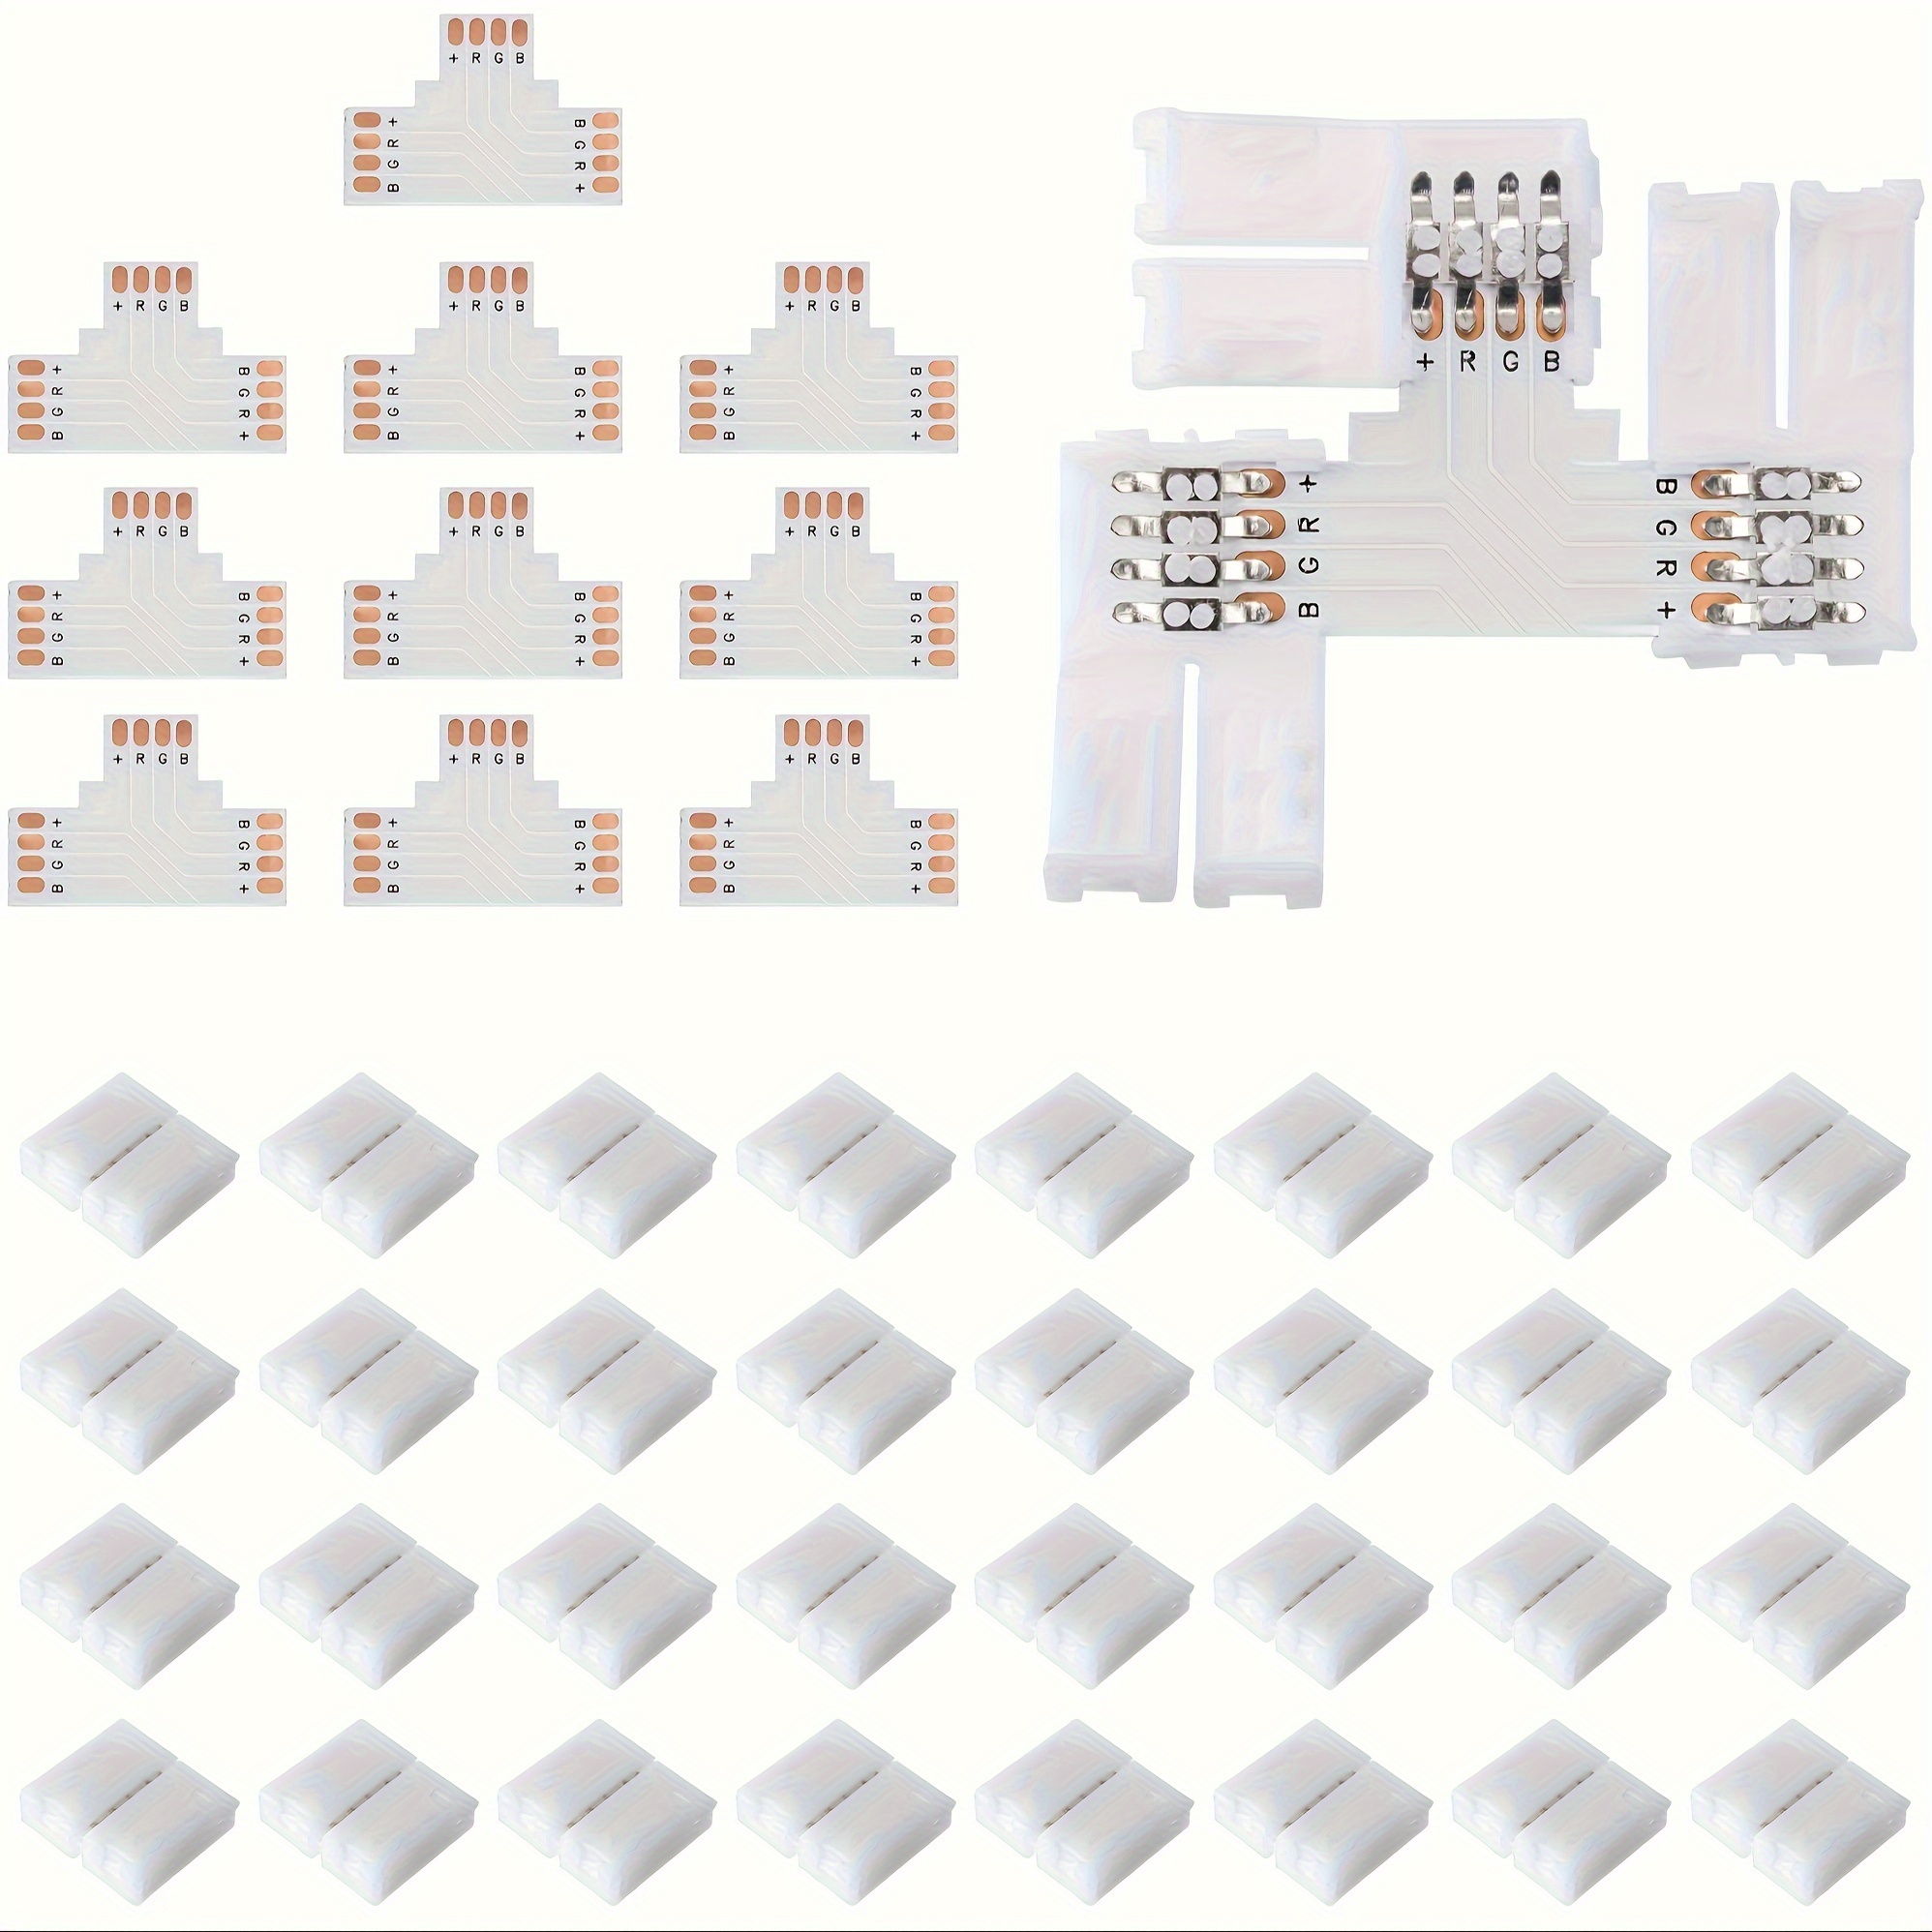 LED-Streifen Verbinder, L-förmig, 2 polig, für 8 mm LED-Streifen